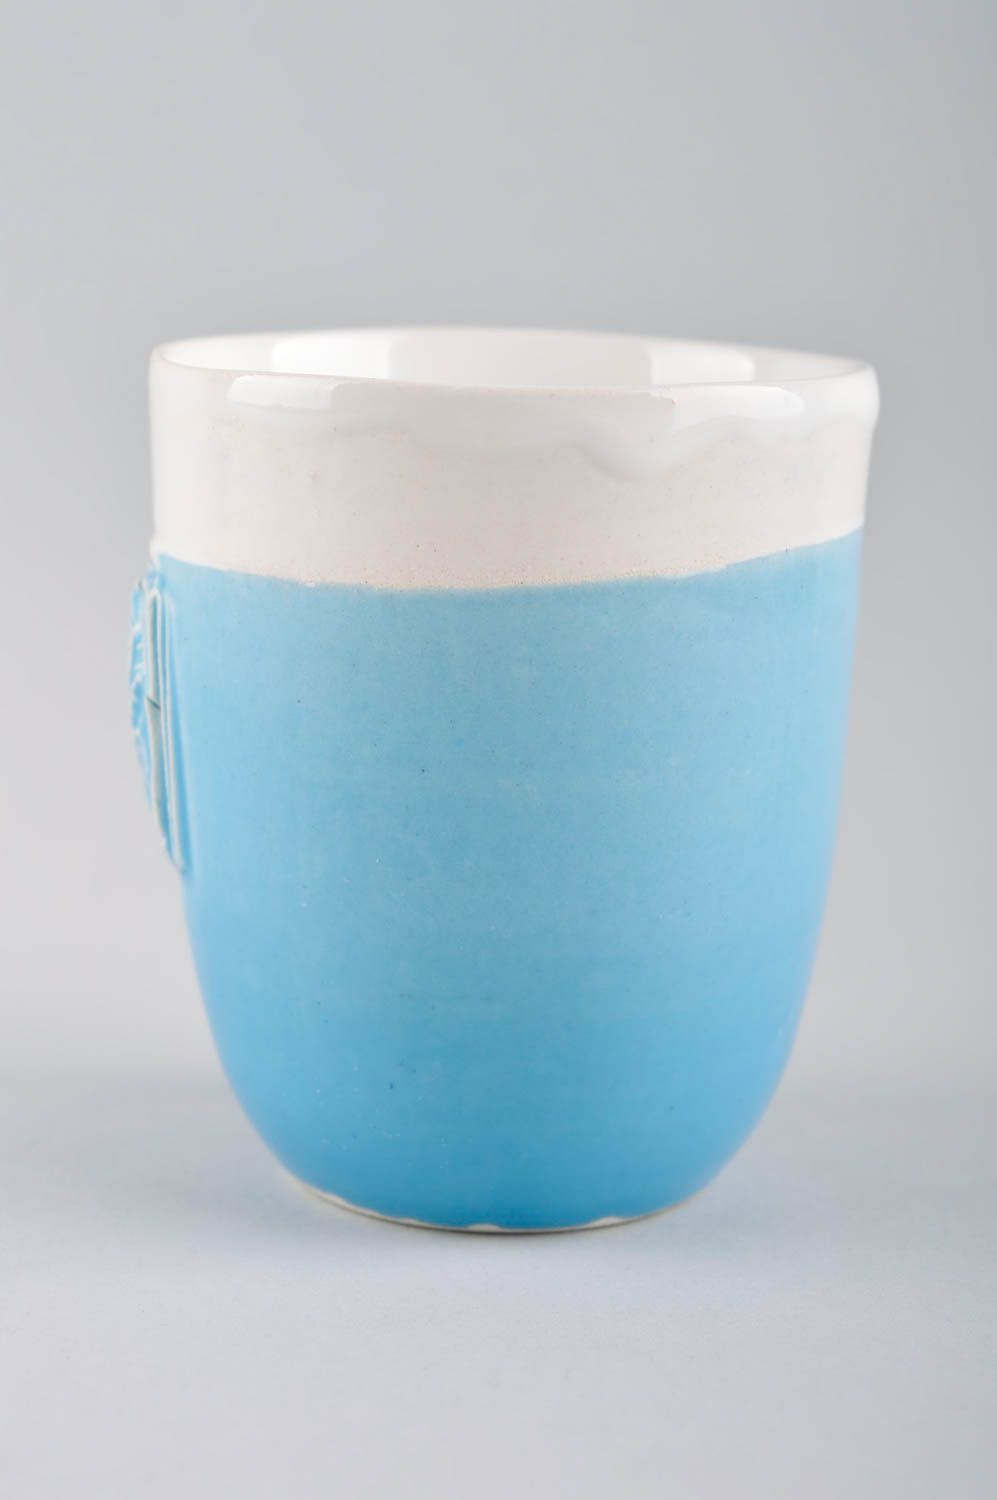 Handmade schöne Teetasse Keramik Tasse buntes Designer Geschirr blau weiß kühl foto 3